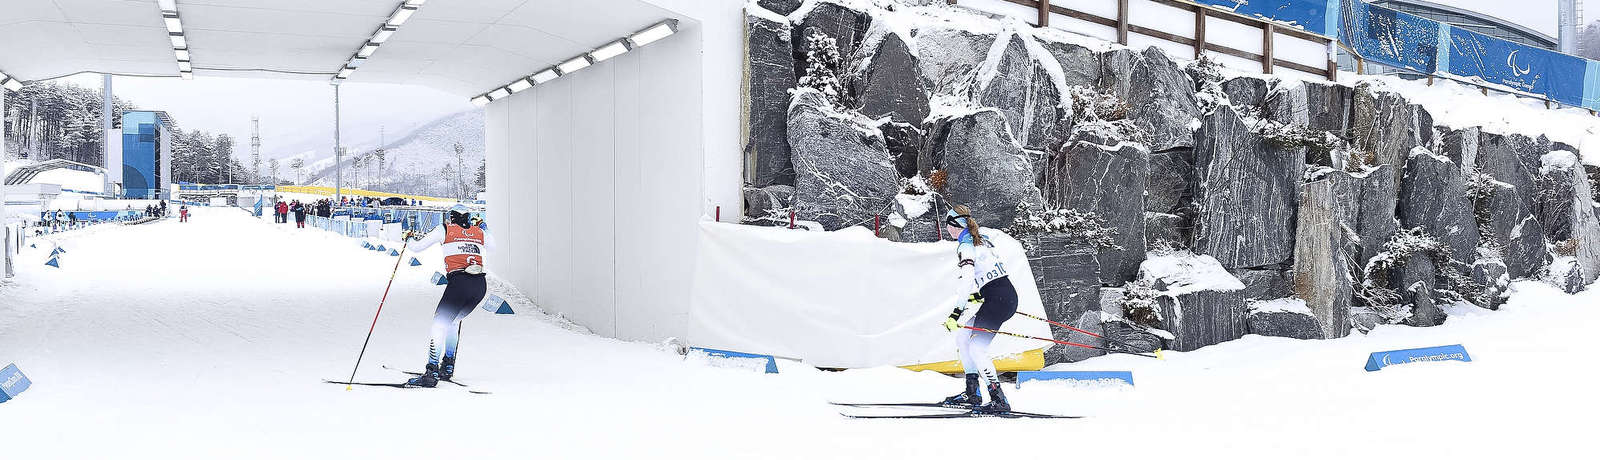 Eine sehbehinderten Ski-Langläuferin läuft mit ihrem Guide auf der Zielgeraden